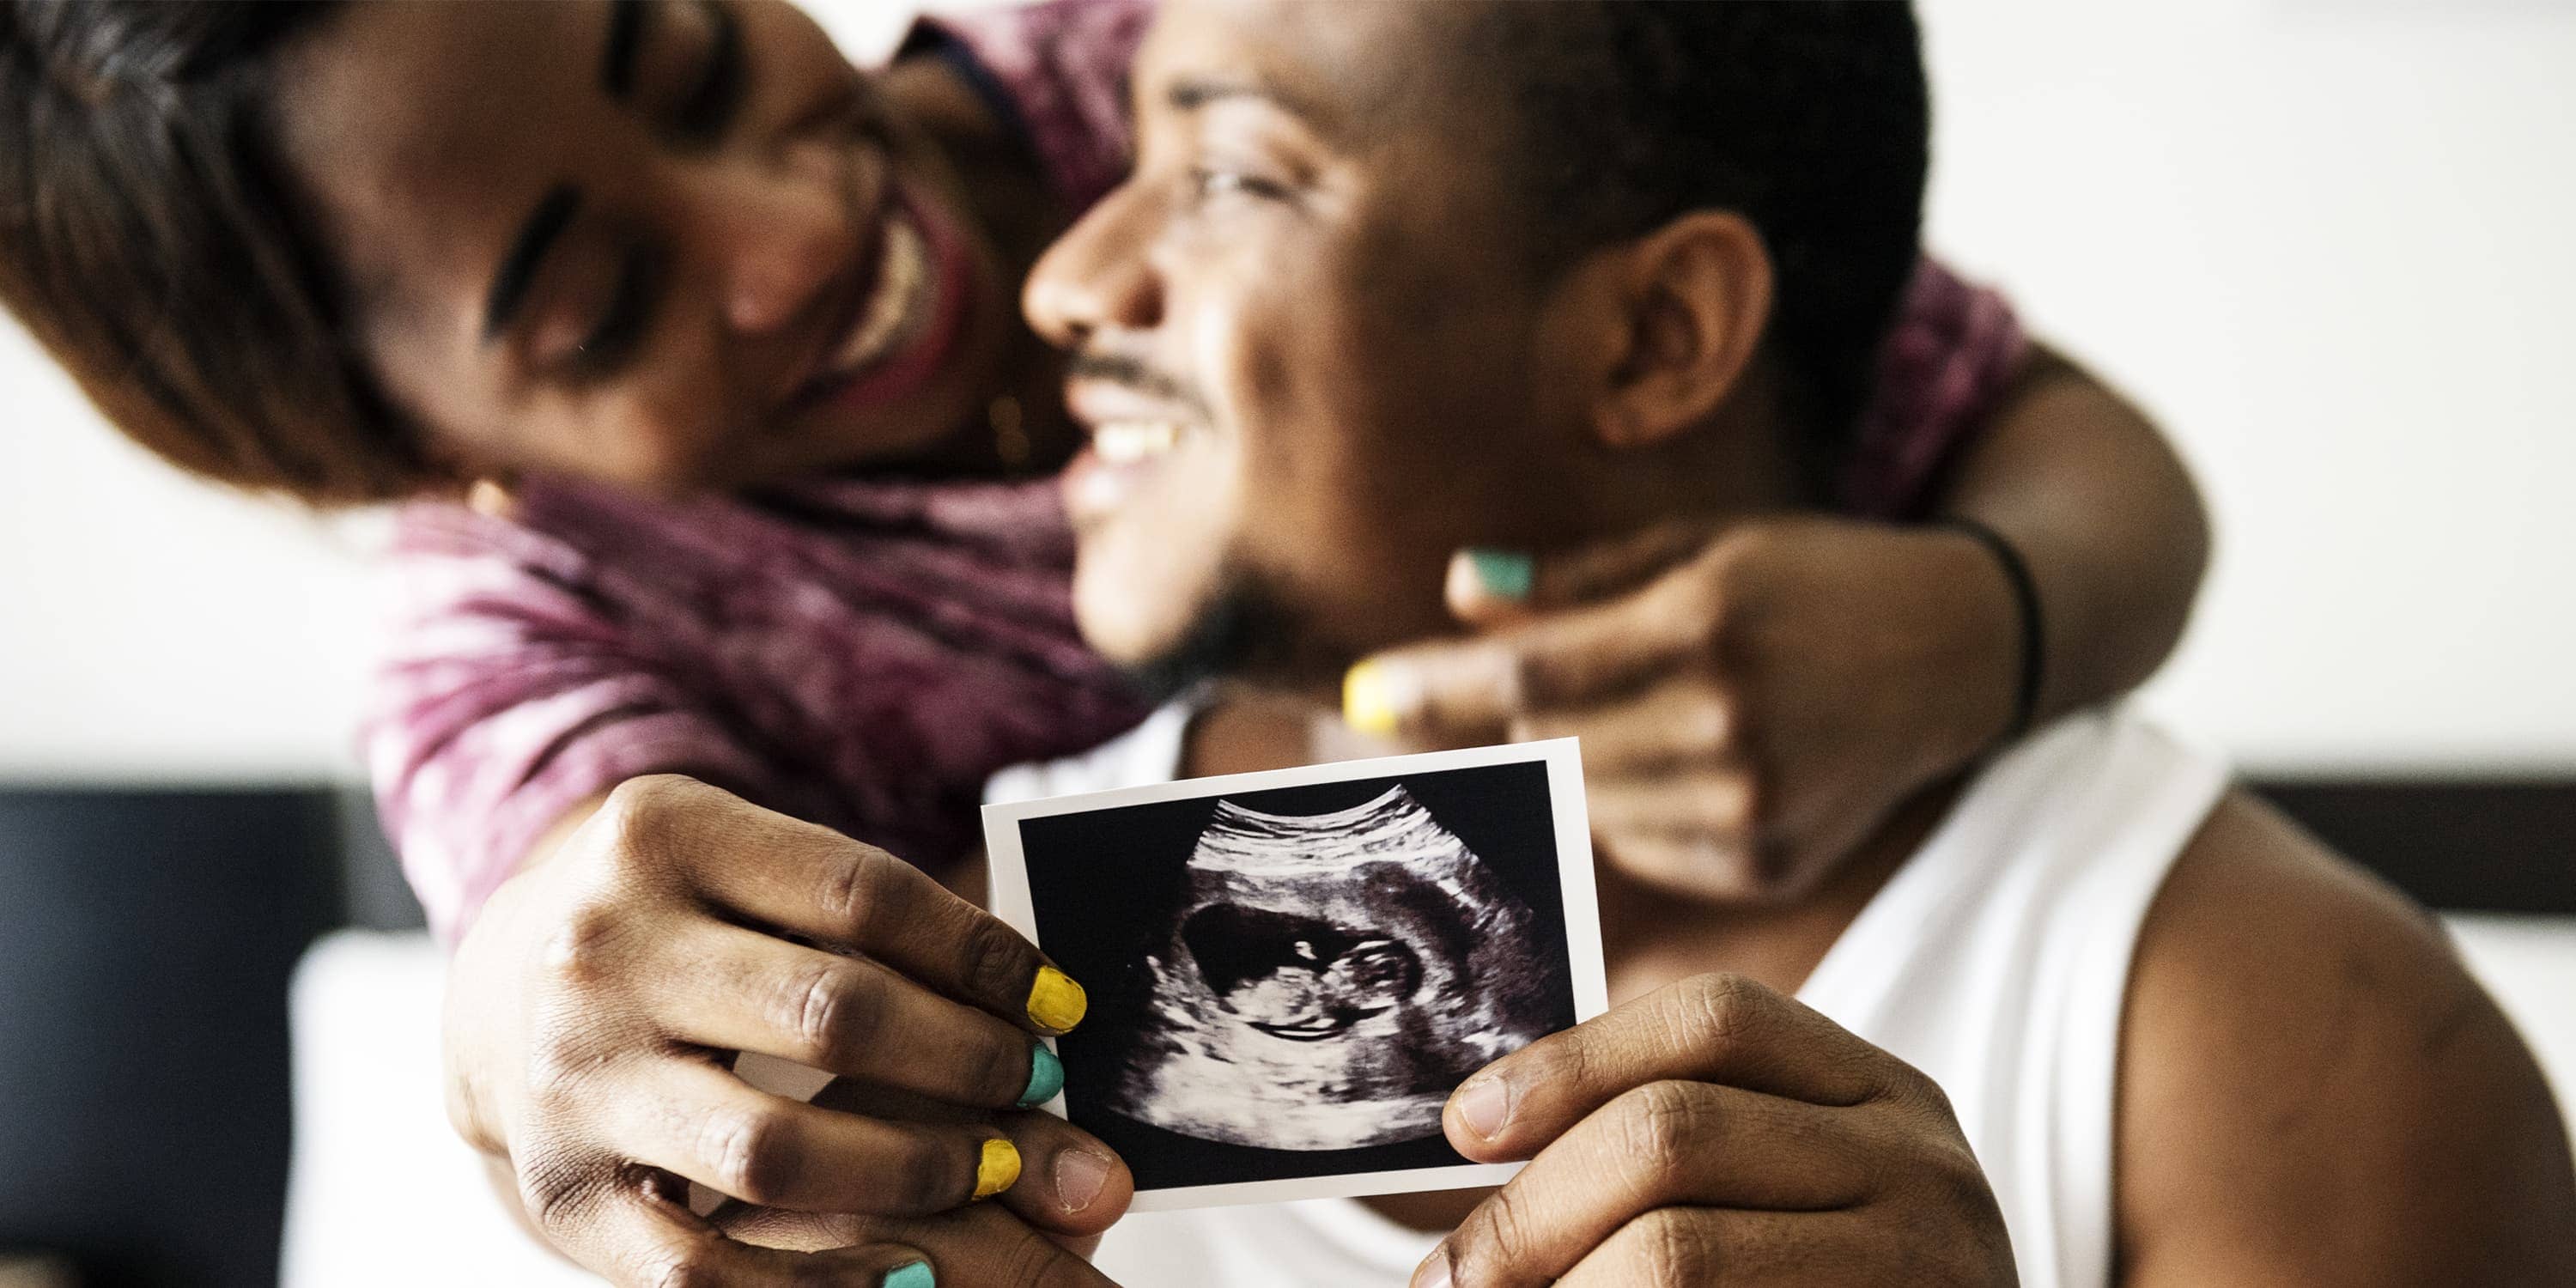 een donker stel laat een scan zien van haar echofoto met daarop haar baby